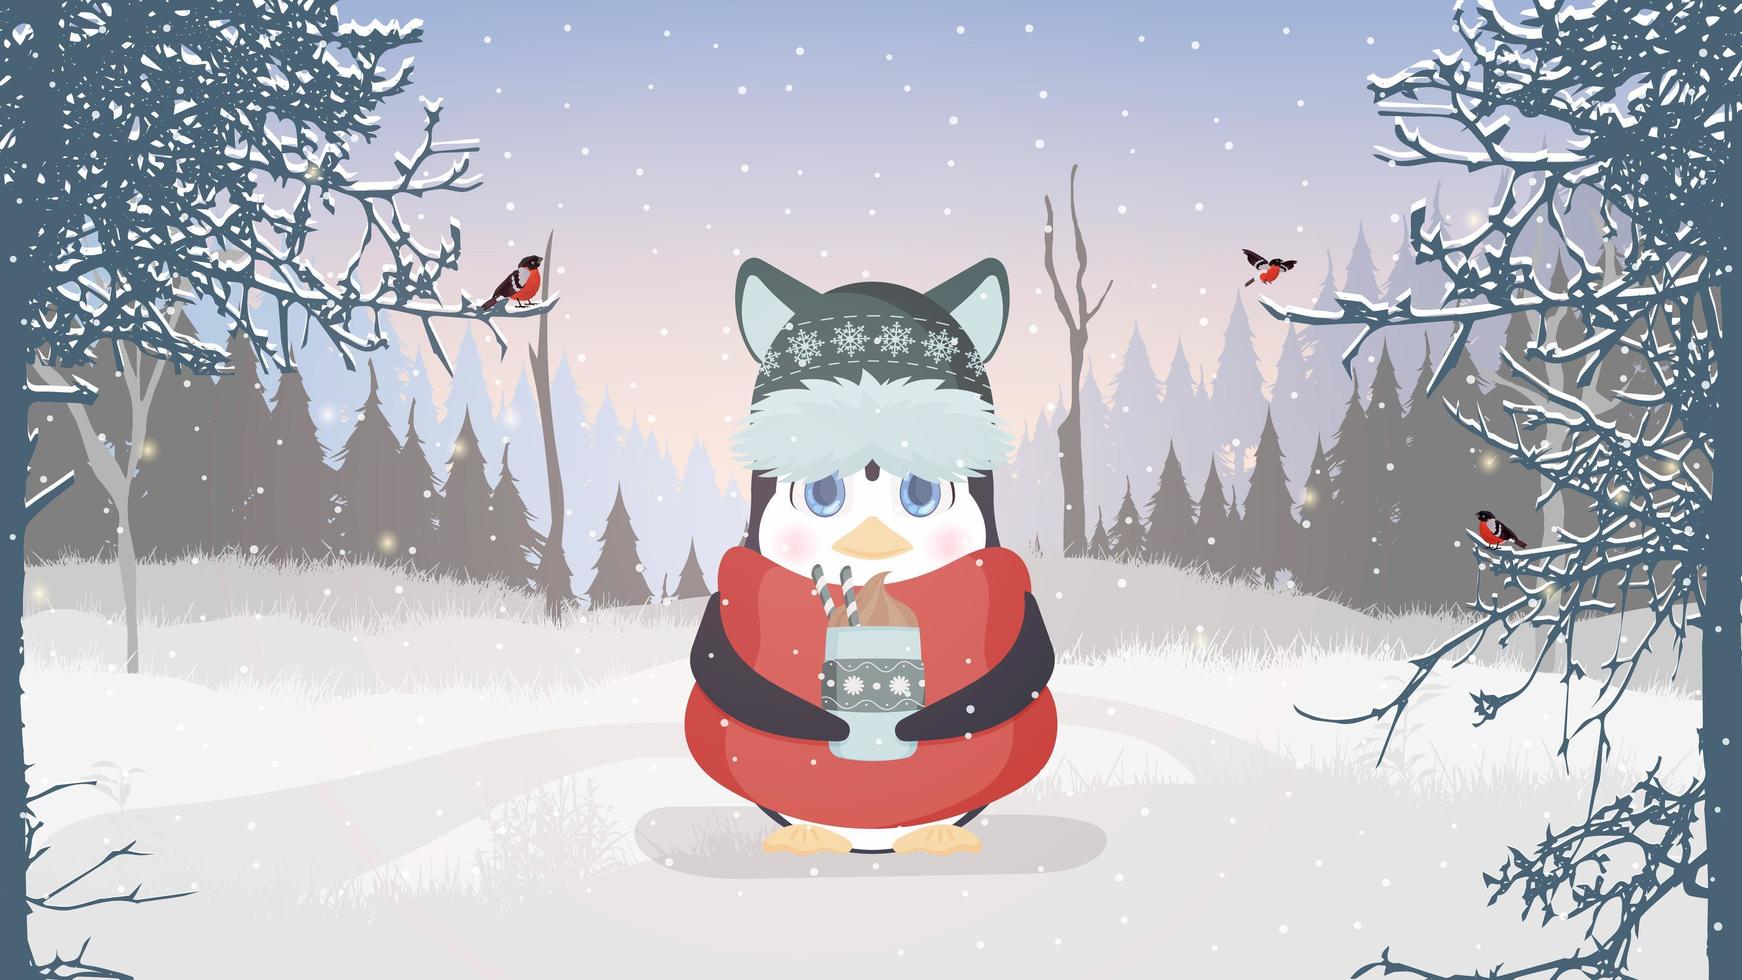 un pinguino in abiti caldi invernali tiene una tazza tra le mani. un simpatico pinguino in un bosco innevato sta bevendo una bevanda calda. cartolina già pronta per un tema invernale. vettore